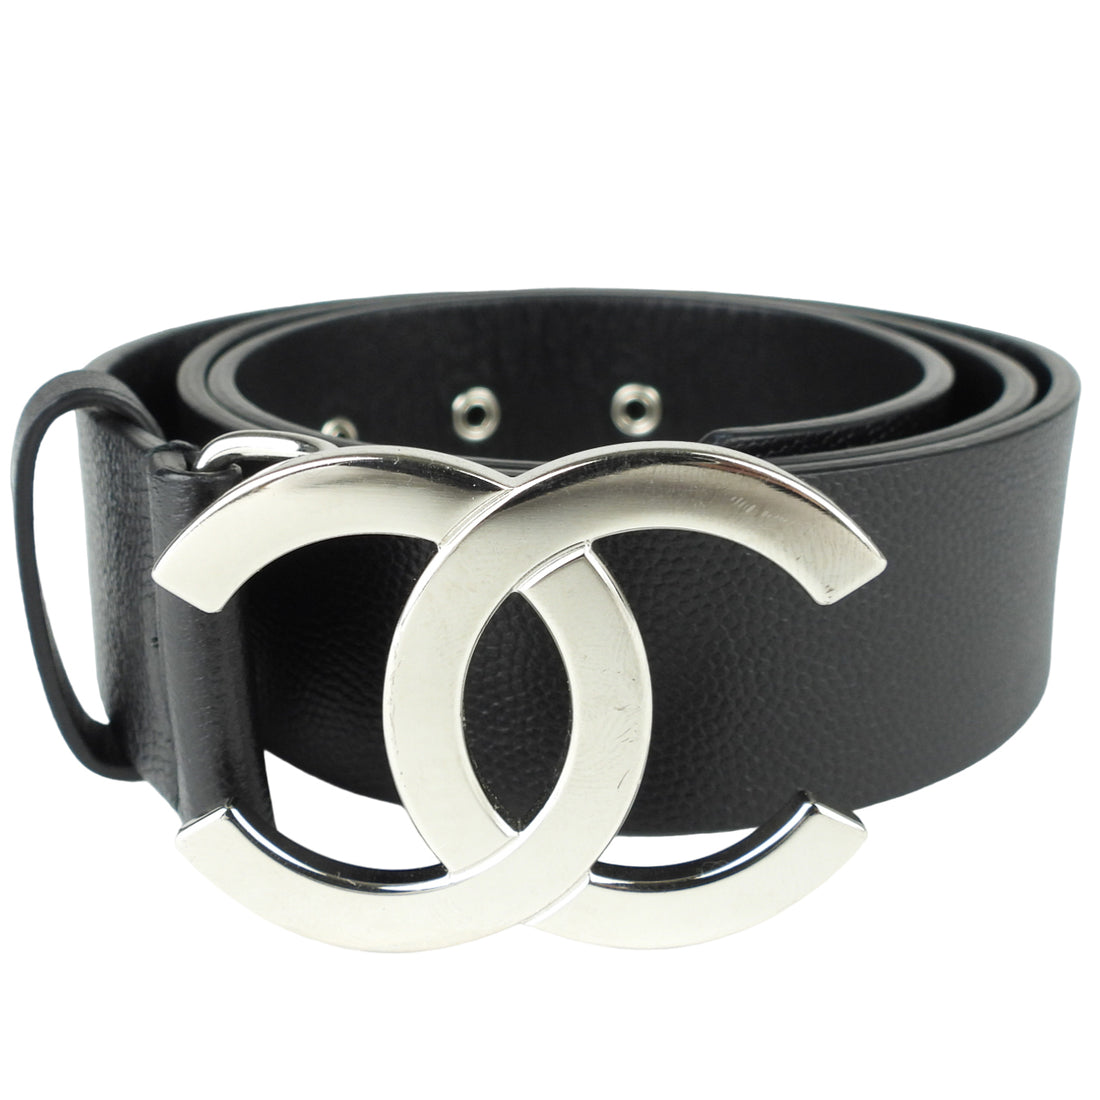 Chanel Black Leather CC Logo Belt - 75 / 30 – I MISS YOU VINTAGE